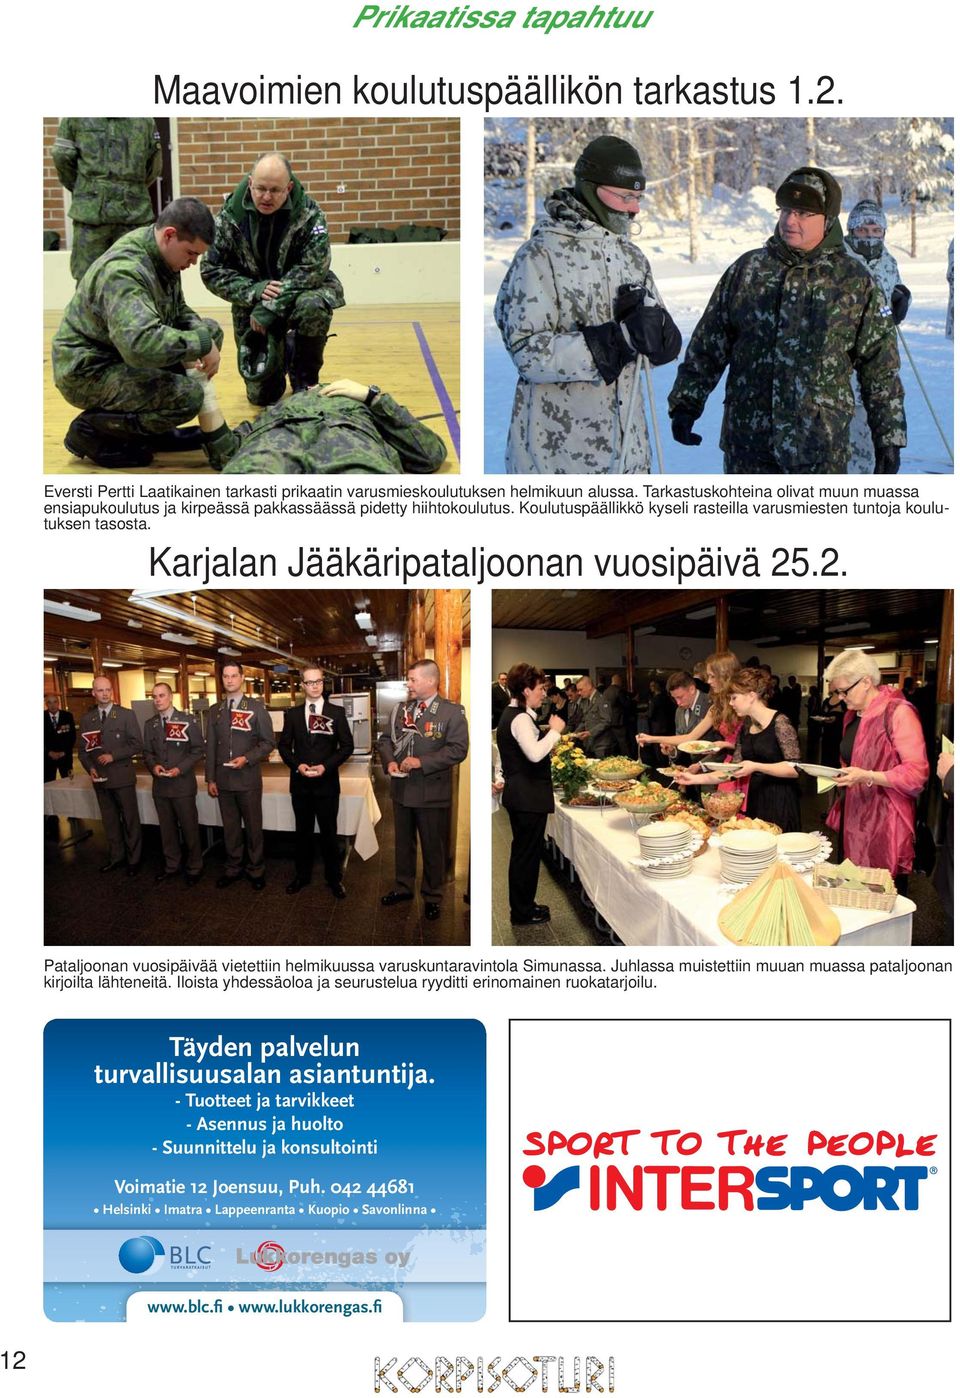 Karjalan Jääkäripataljoonan vuosipäivä 25.2. Pataljoonan vuosipäivää vietettiin helmikuussa varuskuntaravintola Simunassa. Juhlassa muistettiin muuan muassa pataljoonan kirjoilta lähteneitä.